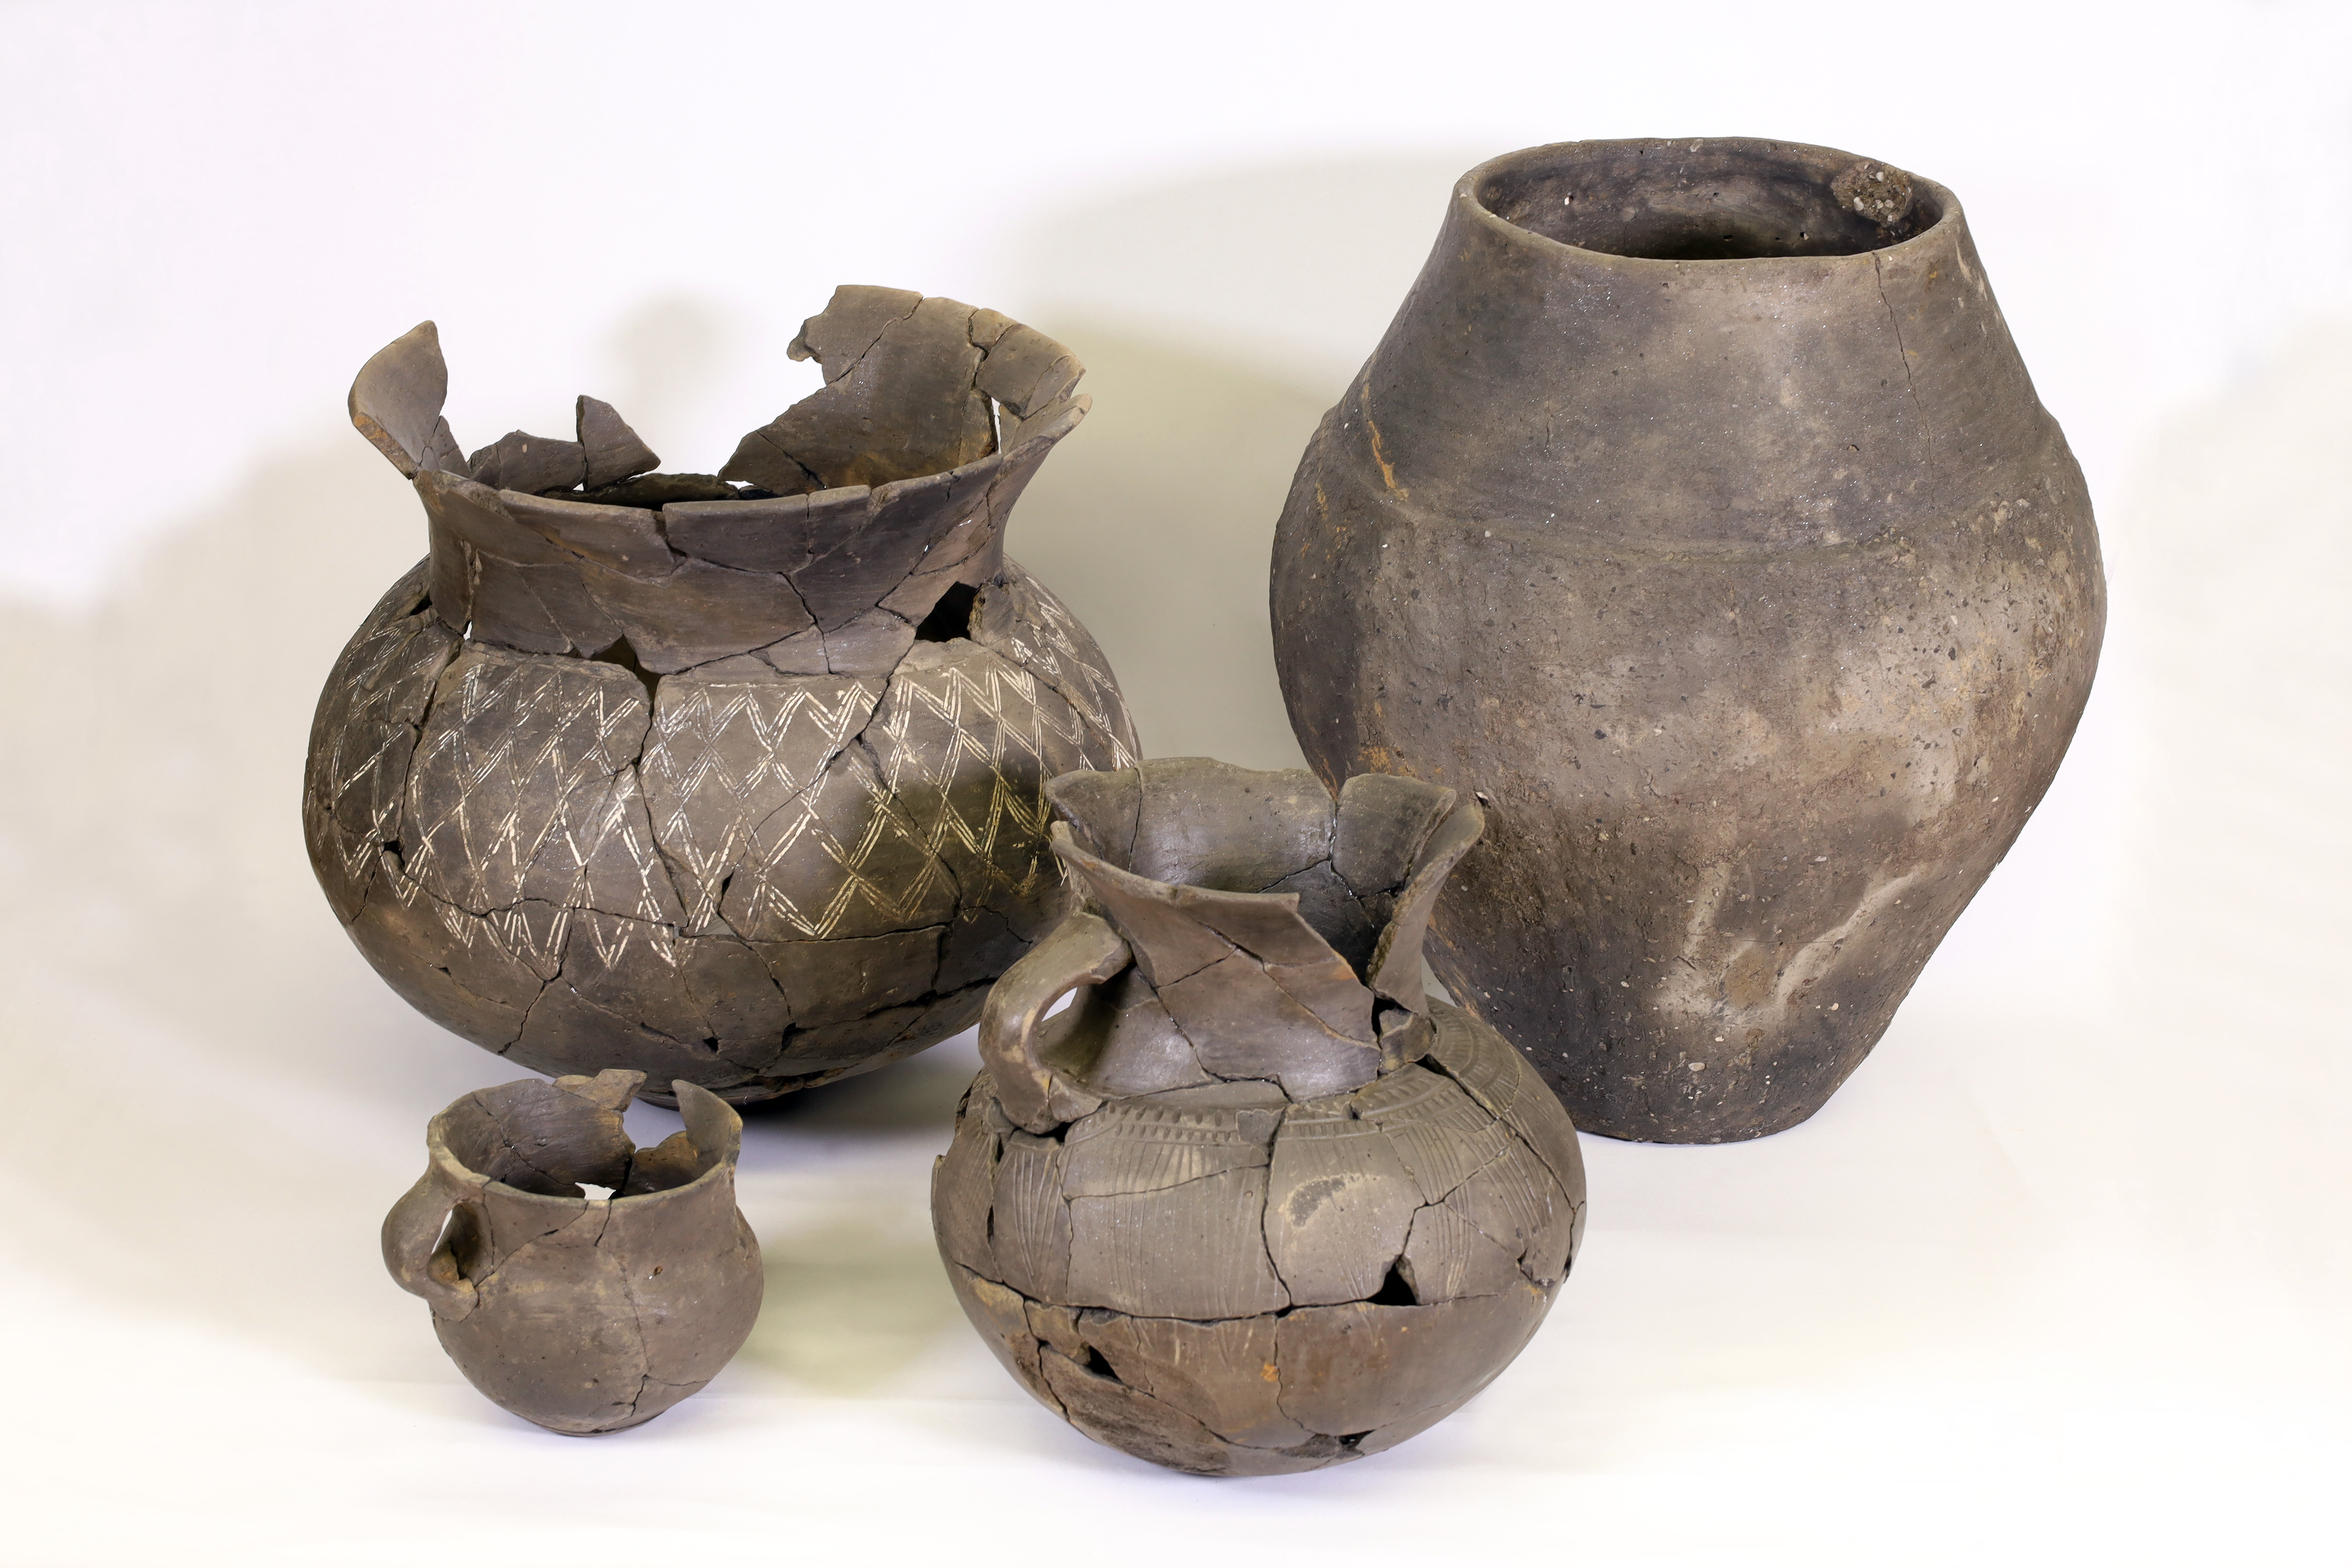 Enkele van de gevonden aardewerken potten